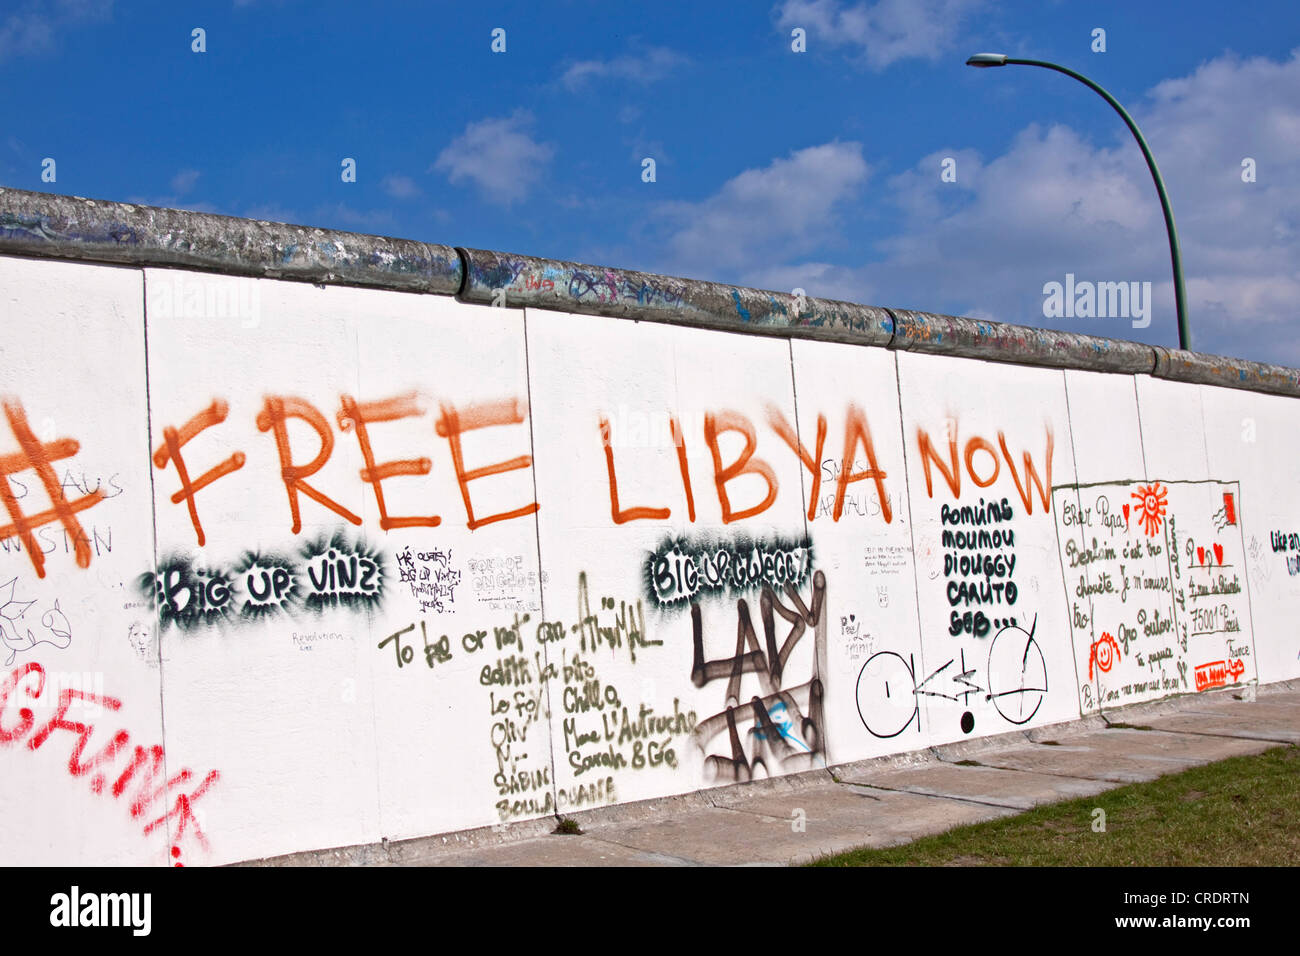 La Libye maintenant 'libre' graffiti sur le mur de Berlin, Berlin, Germany, Europe Banque D'Images